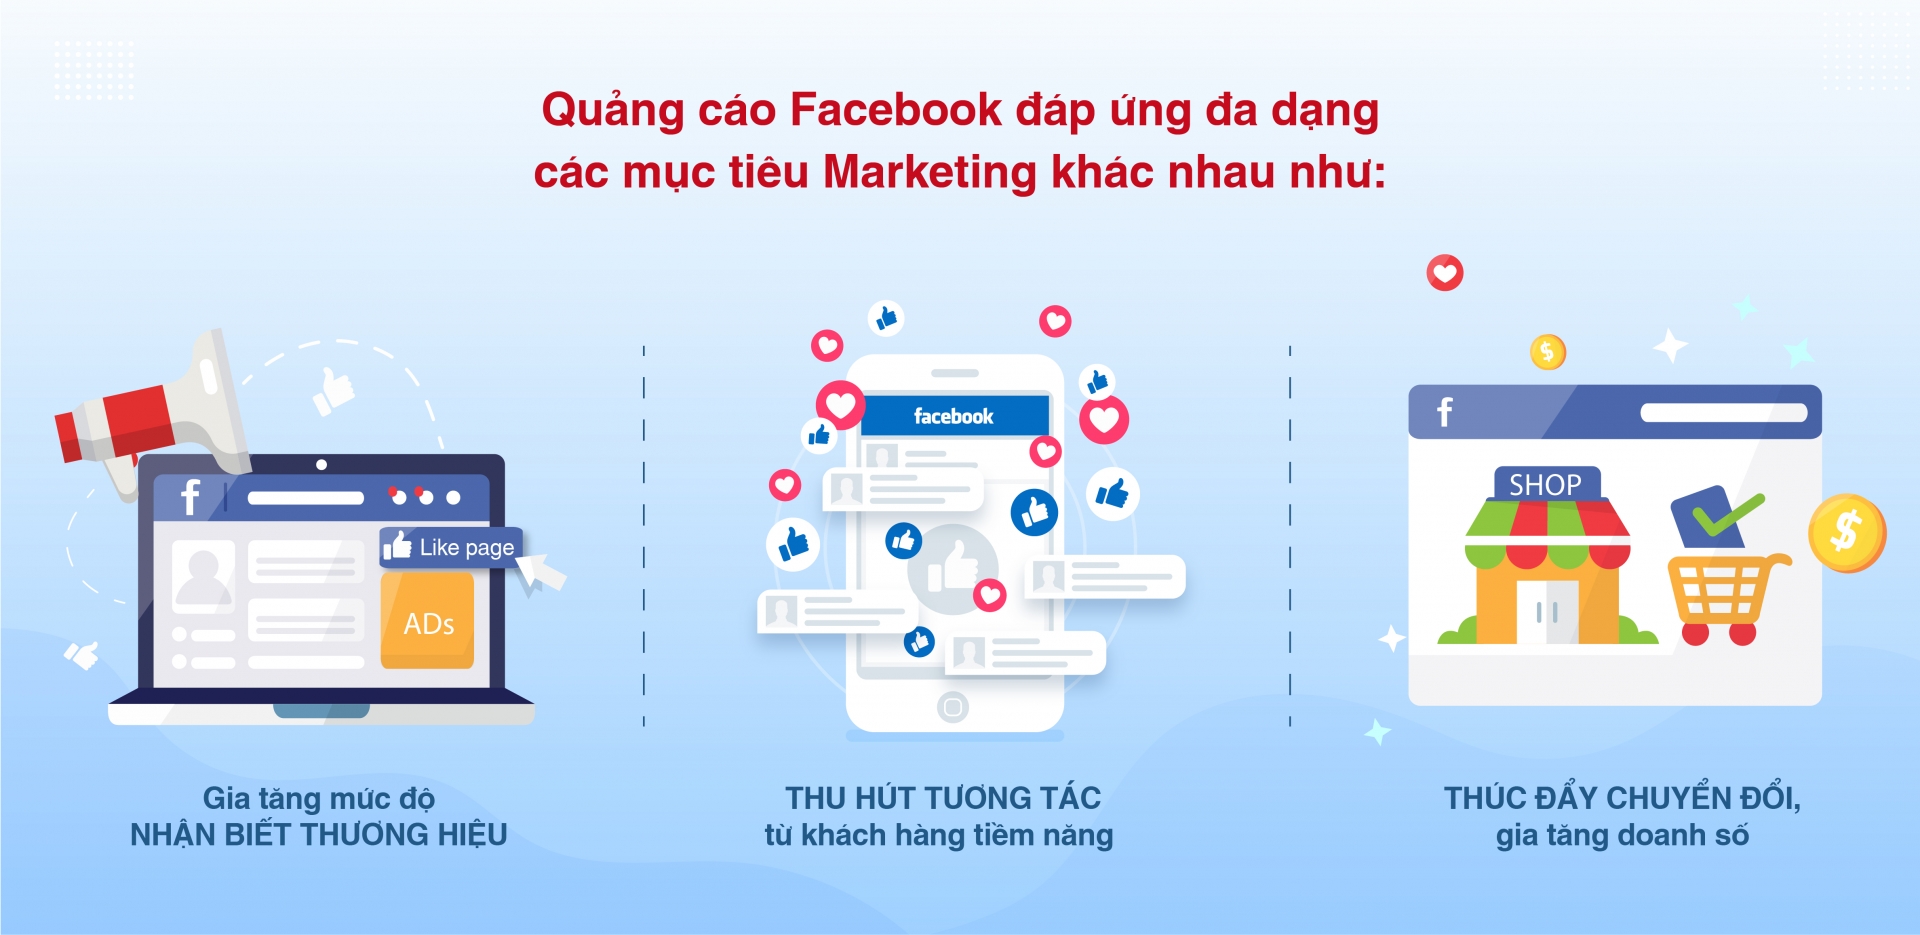 Dich Vu Quang Cao Facebook